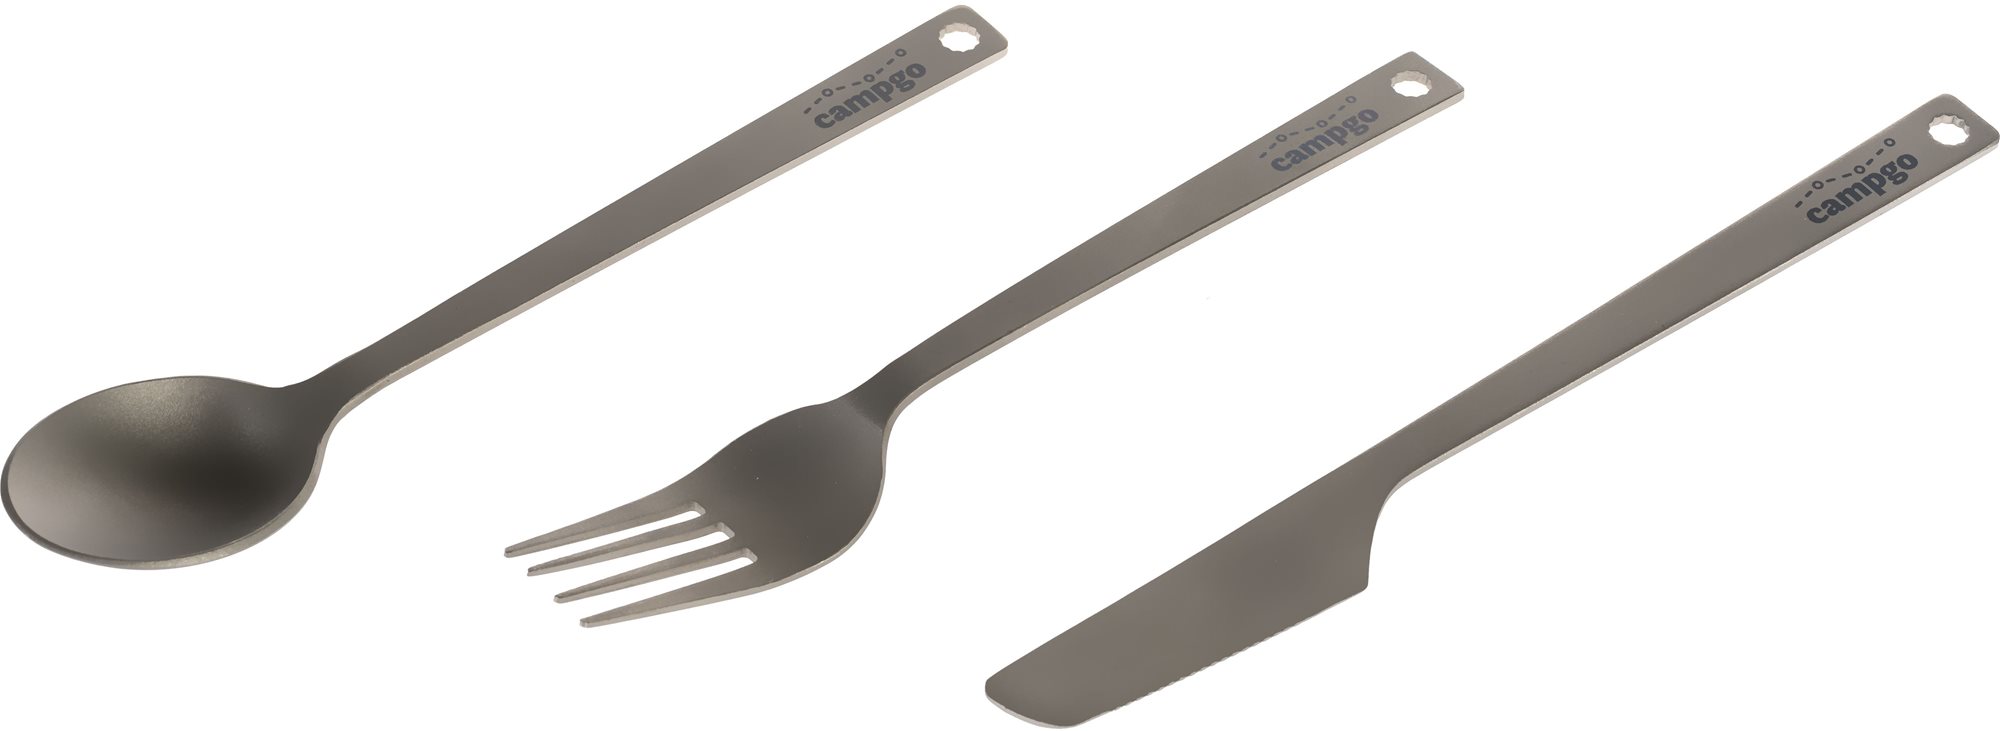 Evőeszköz Campgo 3-Piece Titanium Durable Cutlery Set